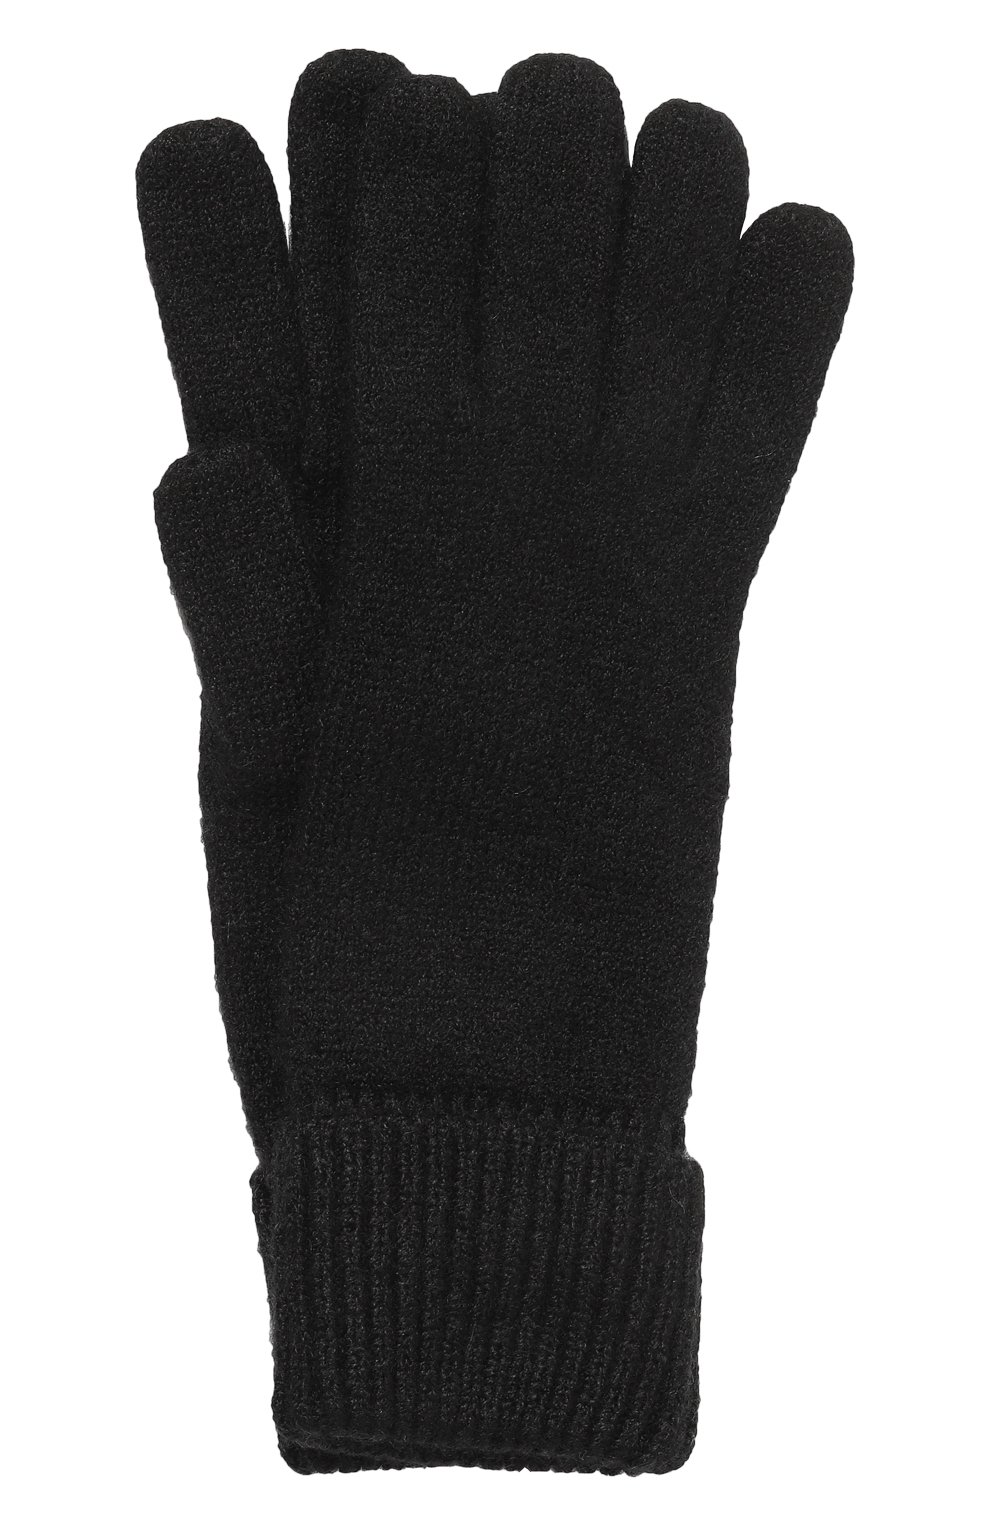 Мужские перчатки из кашемира и шелка IL BORGO CASHMERE черного цвета, арт. 54-1336M0DG0 | Фото 1 (Материал: Текстиль, Кашемир, Шерсть; Кросс-КТ: Трикотаж)